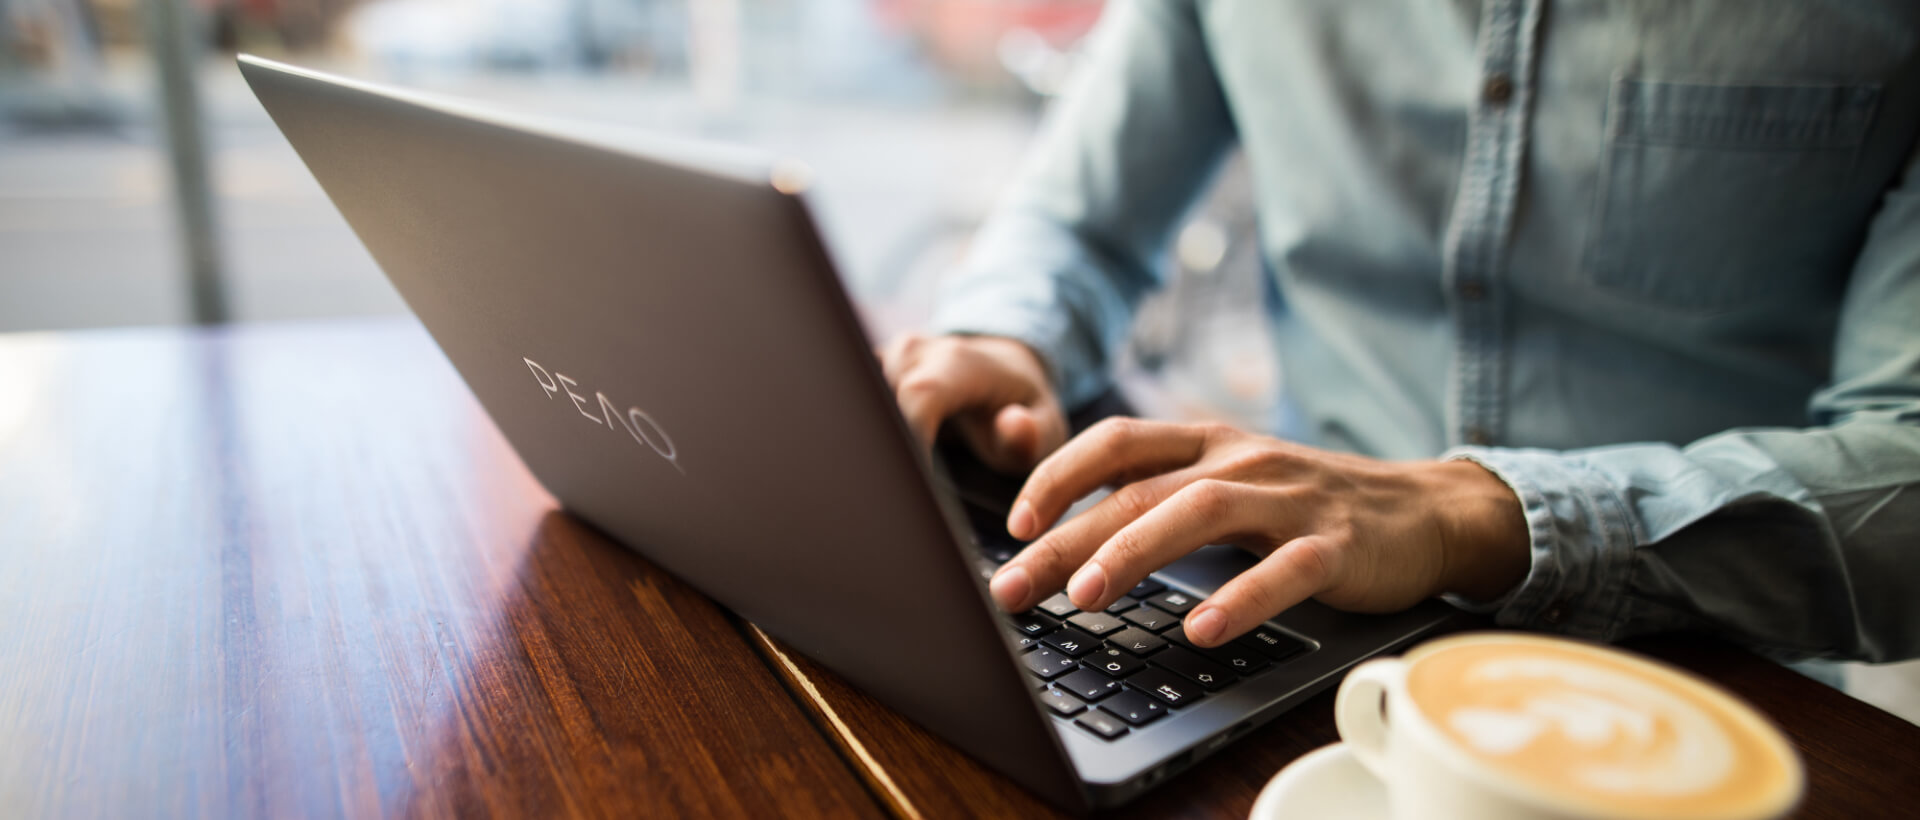 Junger Mann tippt auf einem Laptop von PEAQ, daneben eine volle Kaffeetasse, sitzt in einem Café, Nahansicht, Panorama